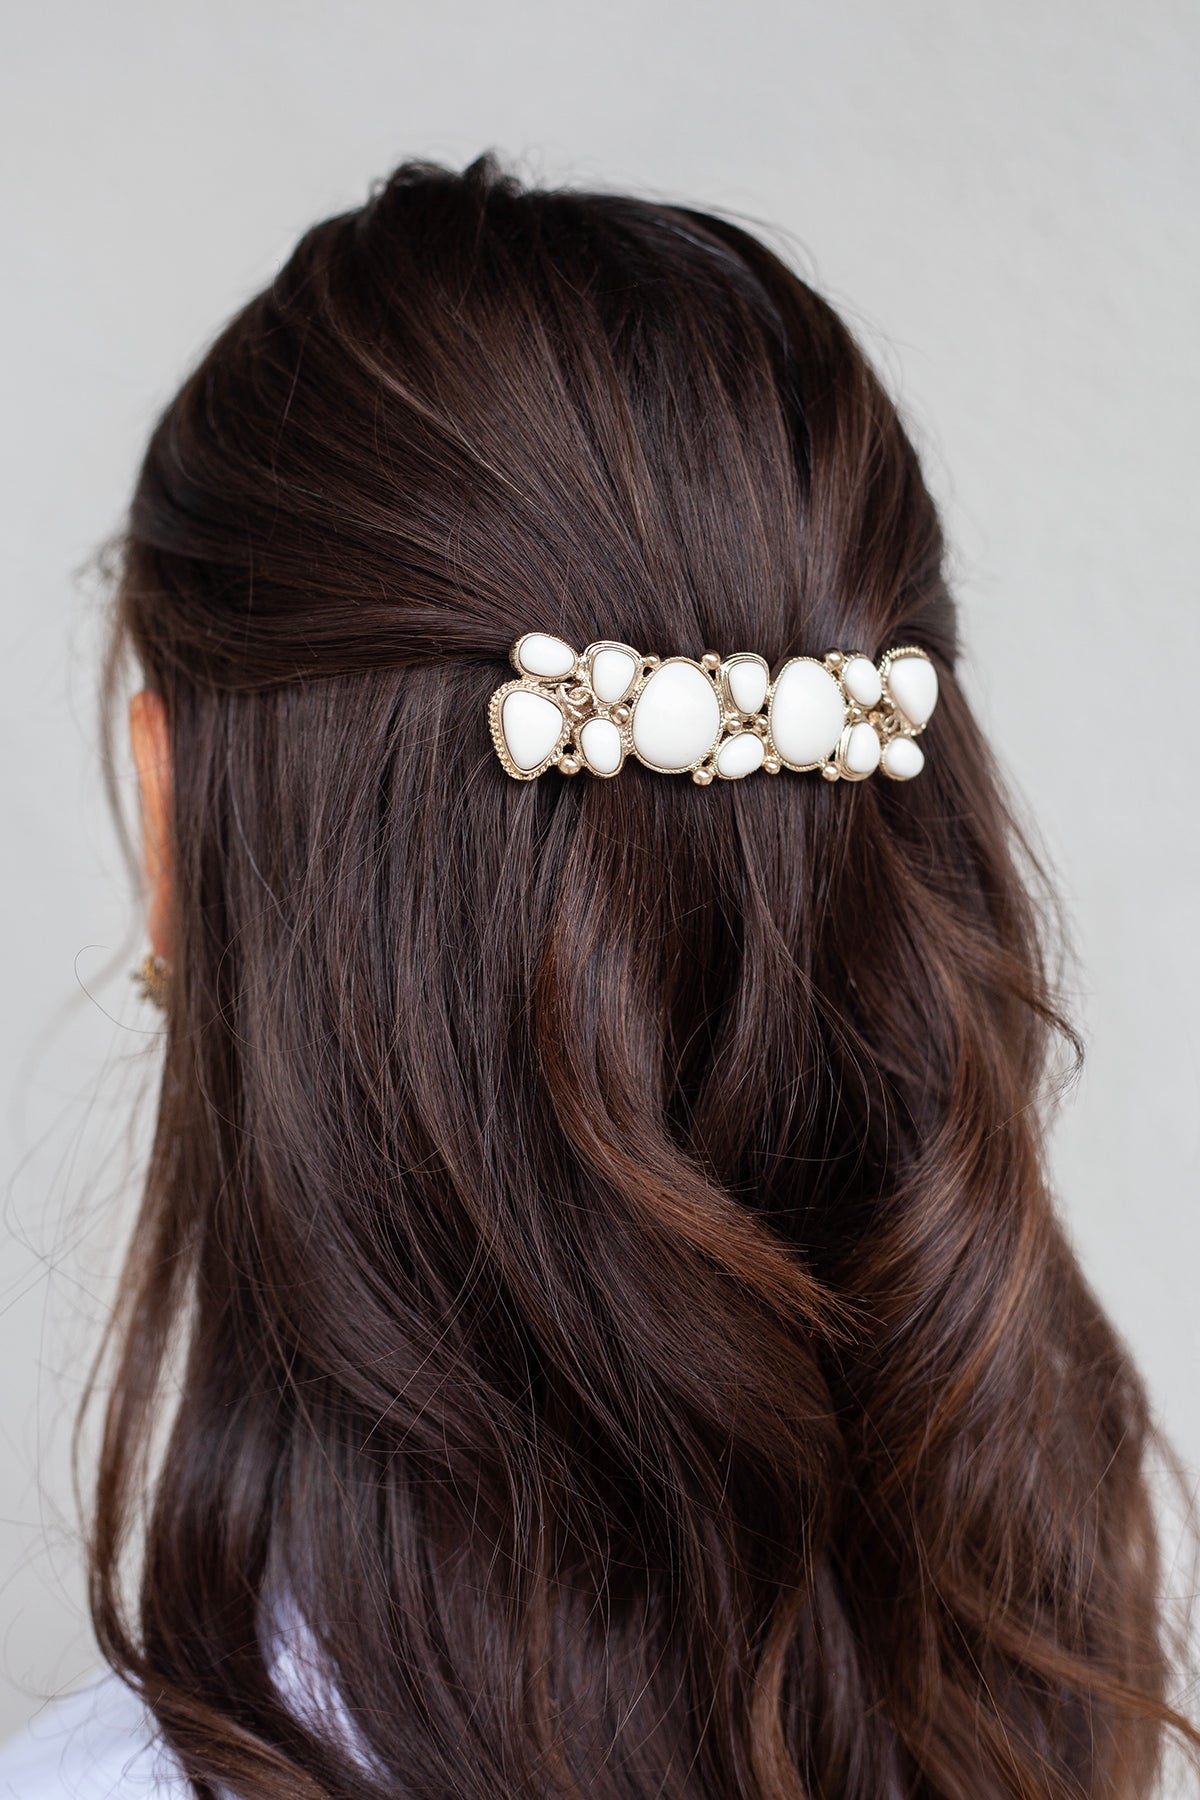 Chanel Mosaic Hair Barrette - Gold/White